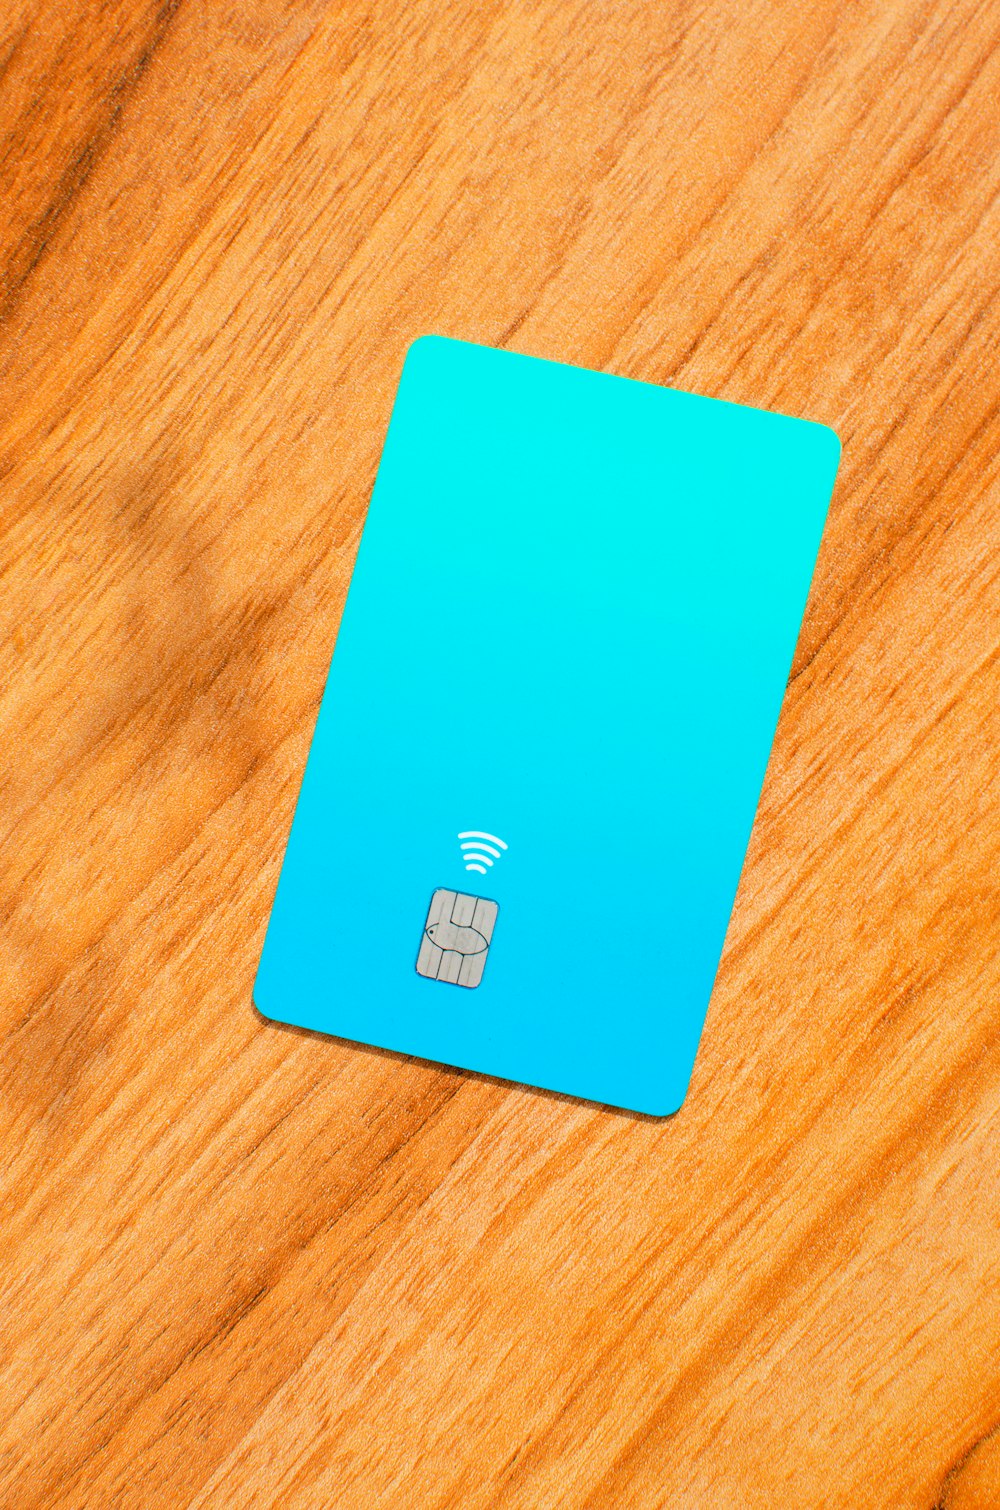 Una tarjeta SIM azul encima de una mesa de madera